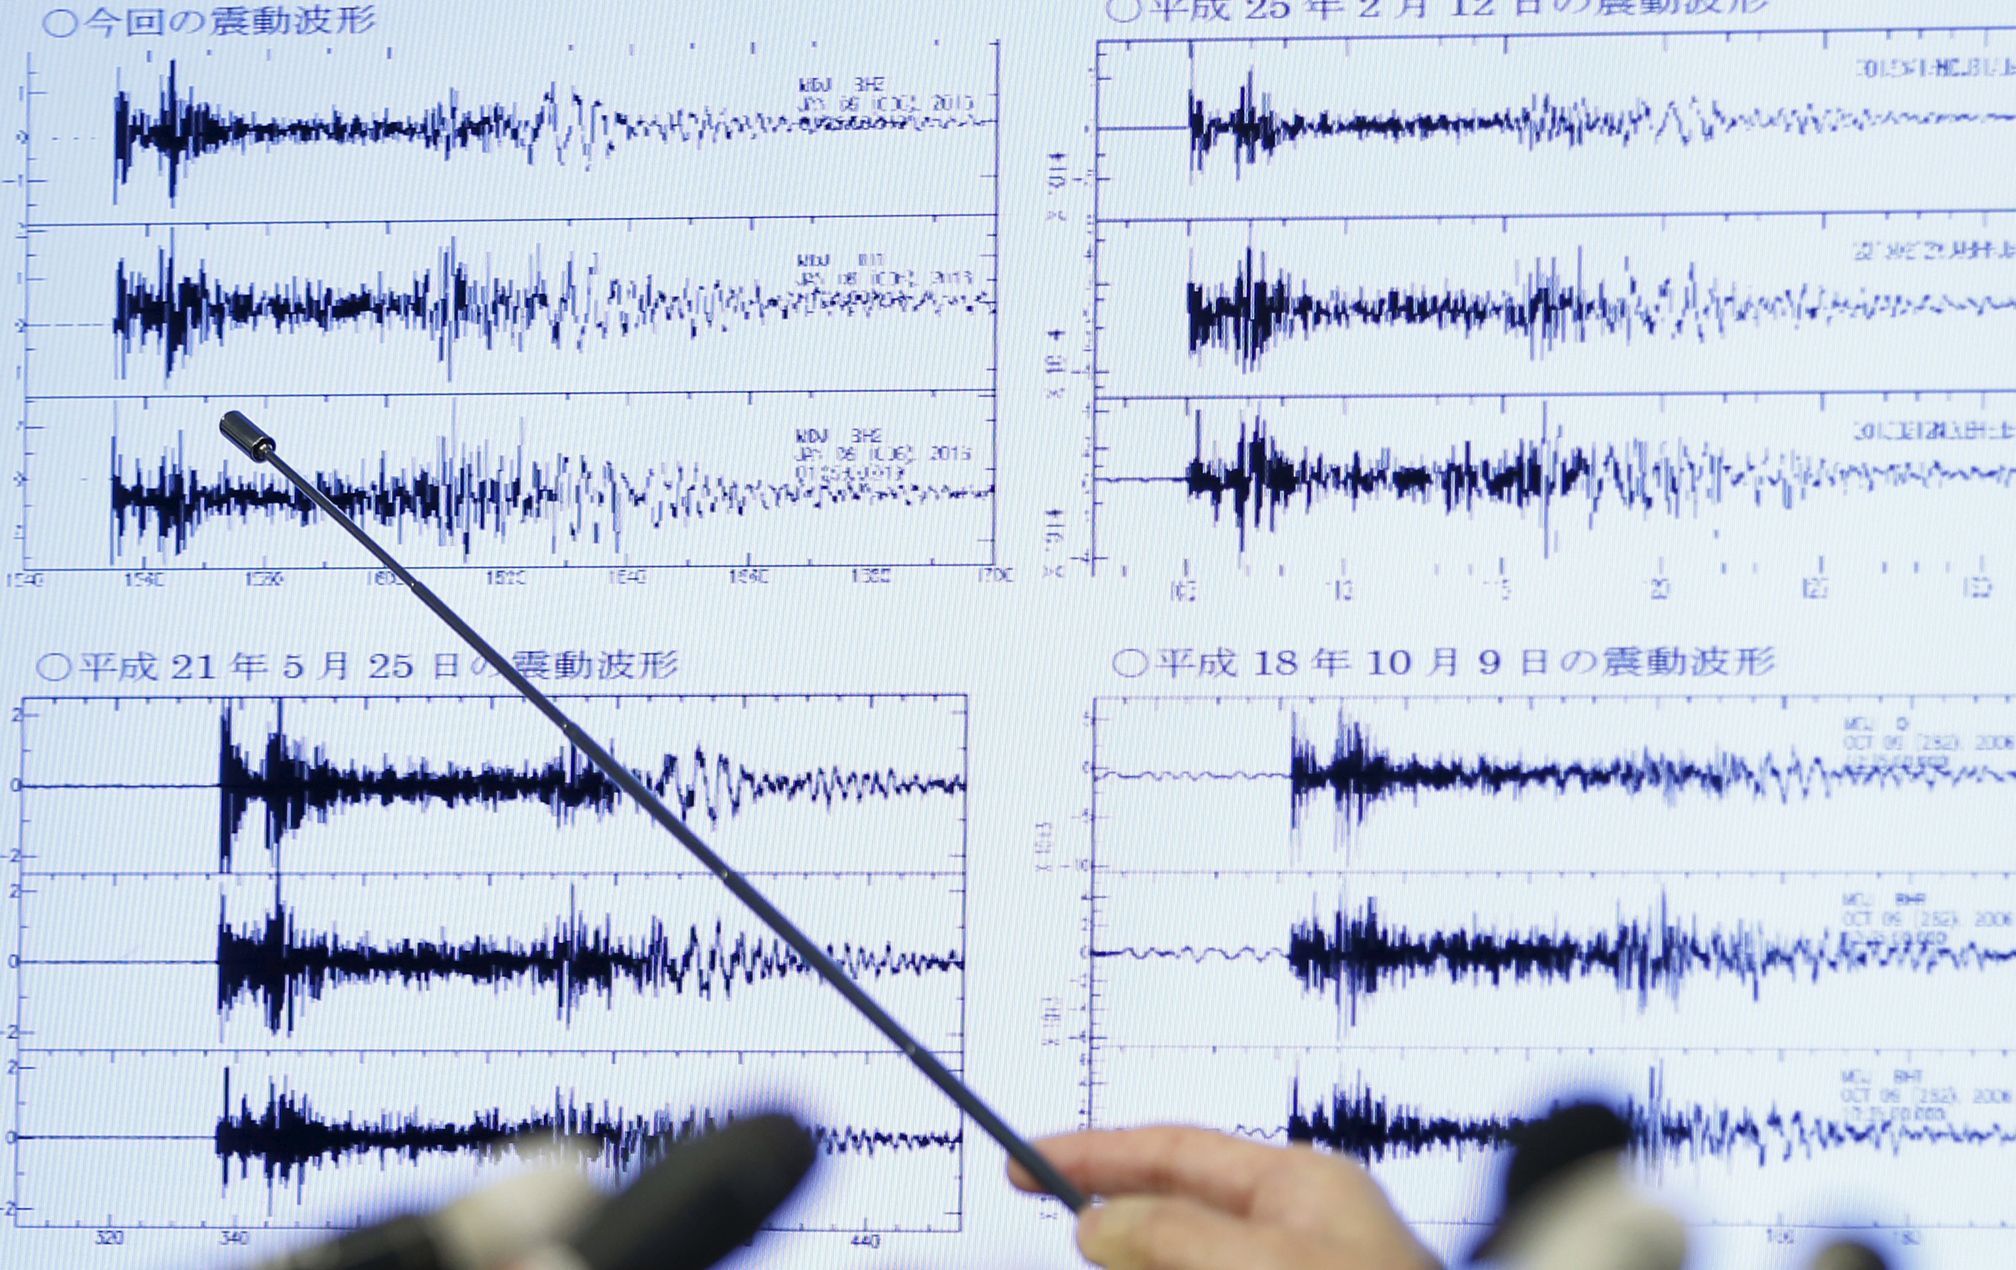 Šéf pozorovacího centra pro zemětřesení a tsunami japonského meteorologického úřadu ukazuje, jak jejich přístroje zaznamenaly test vodíkové pumy v KLDR